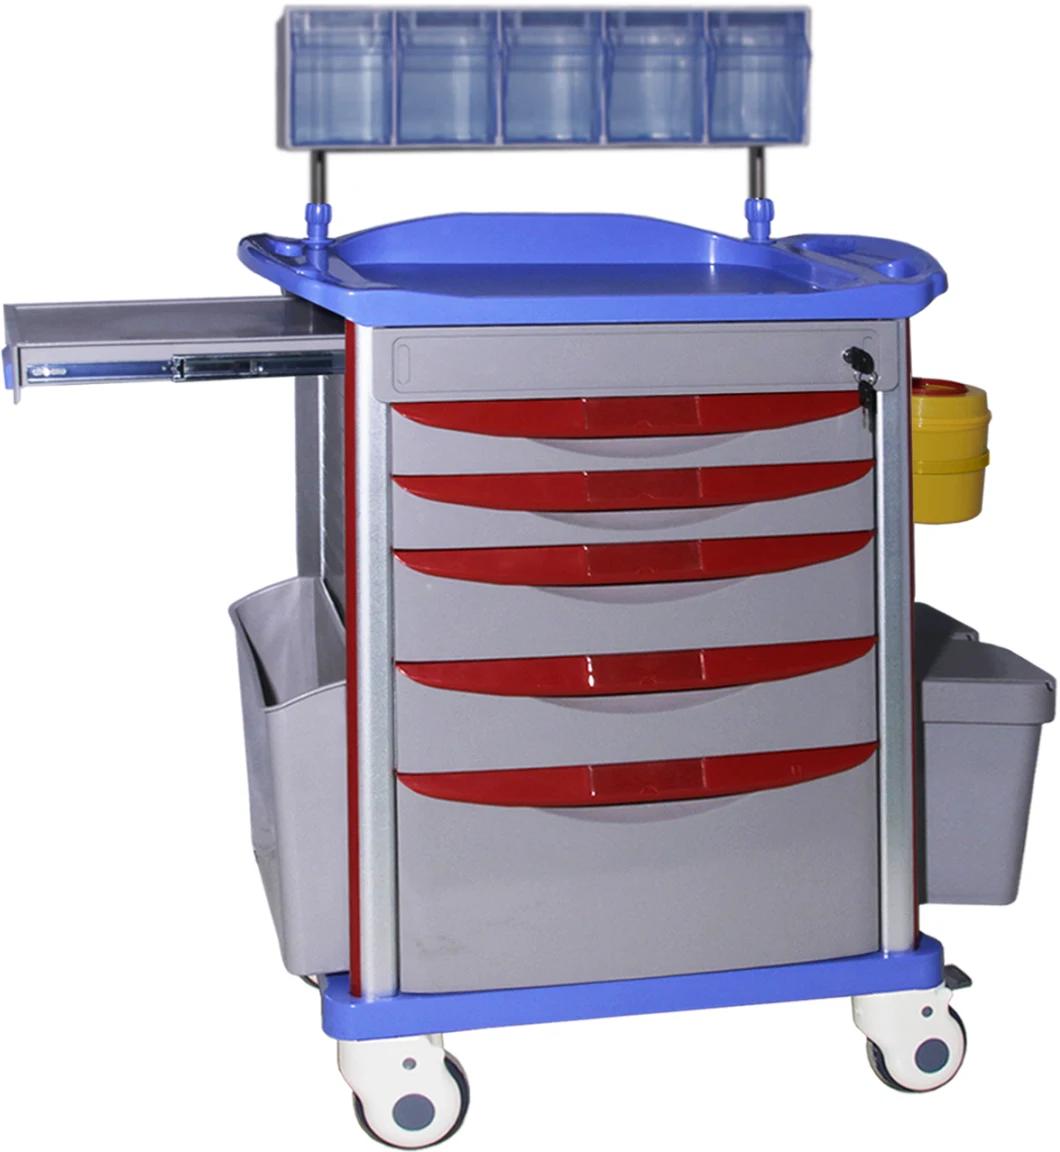 Mn-AC003 ABS Emergency Medical Emergency Cart Transfer Nursing Hospital Treatment Trolley